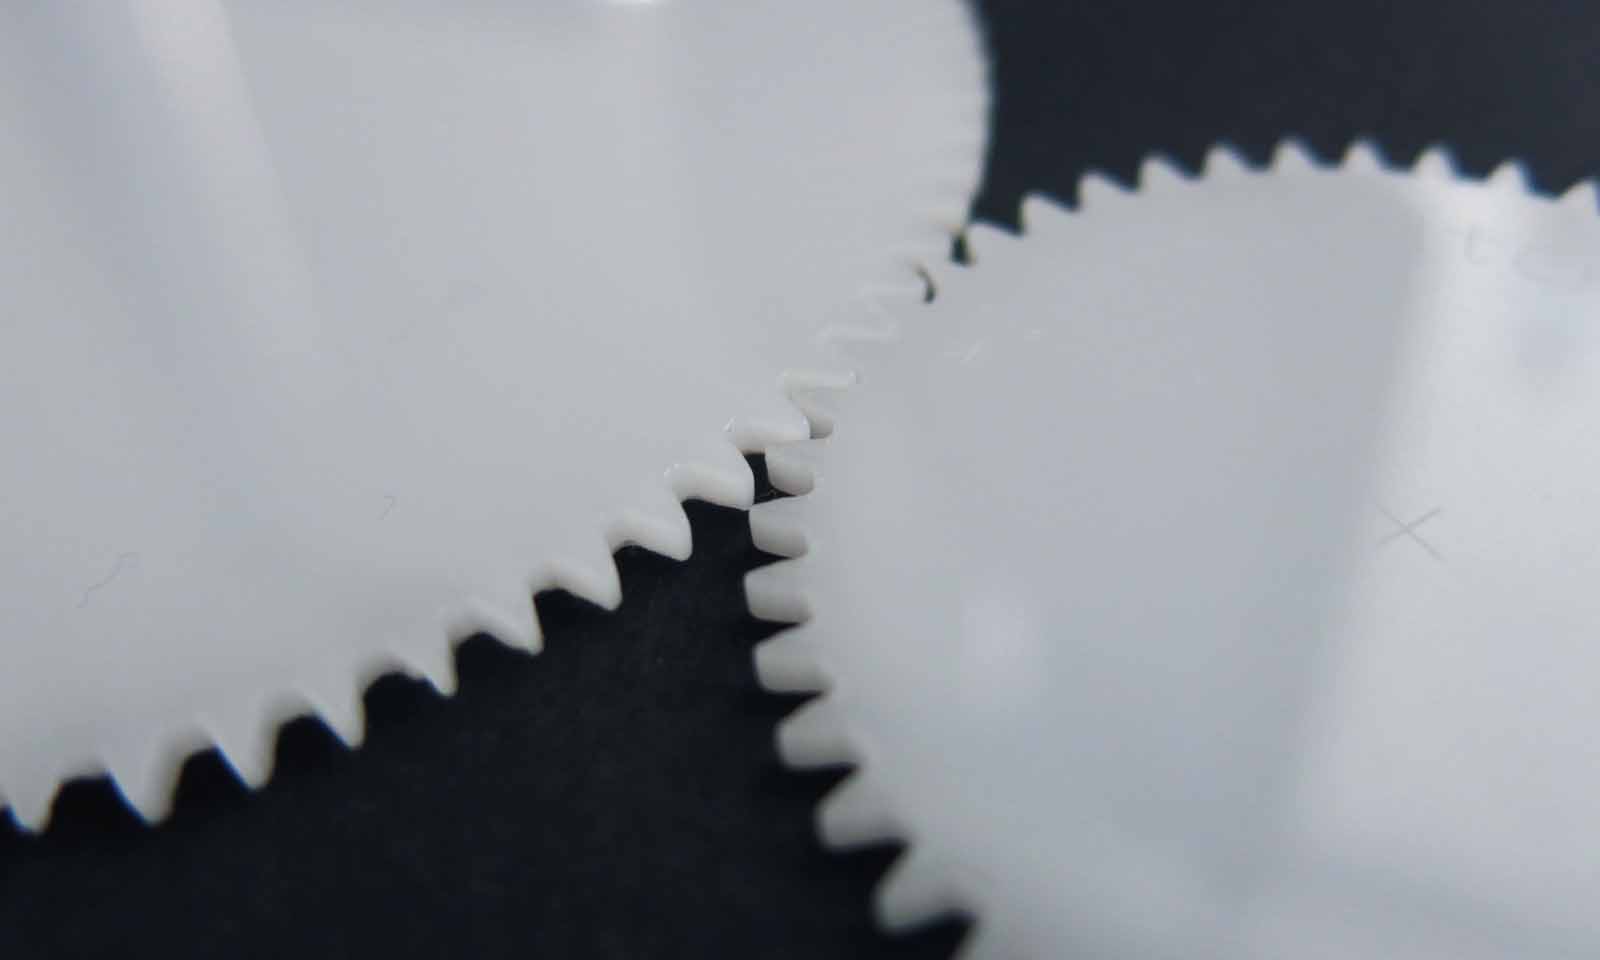 Laser cutting service : Design your Own Gear Mechanism | Sculpteo Blog